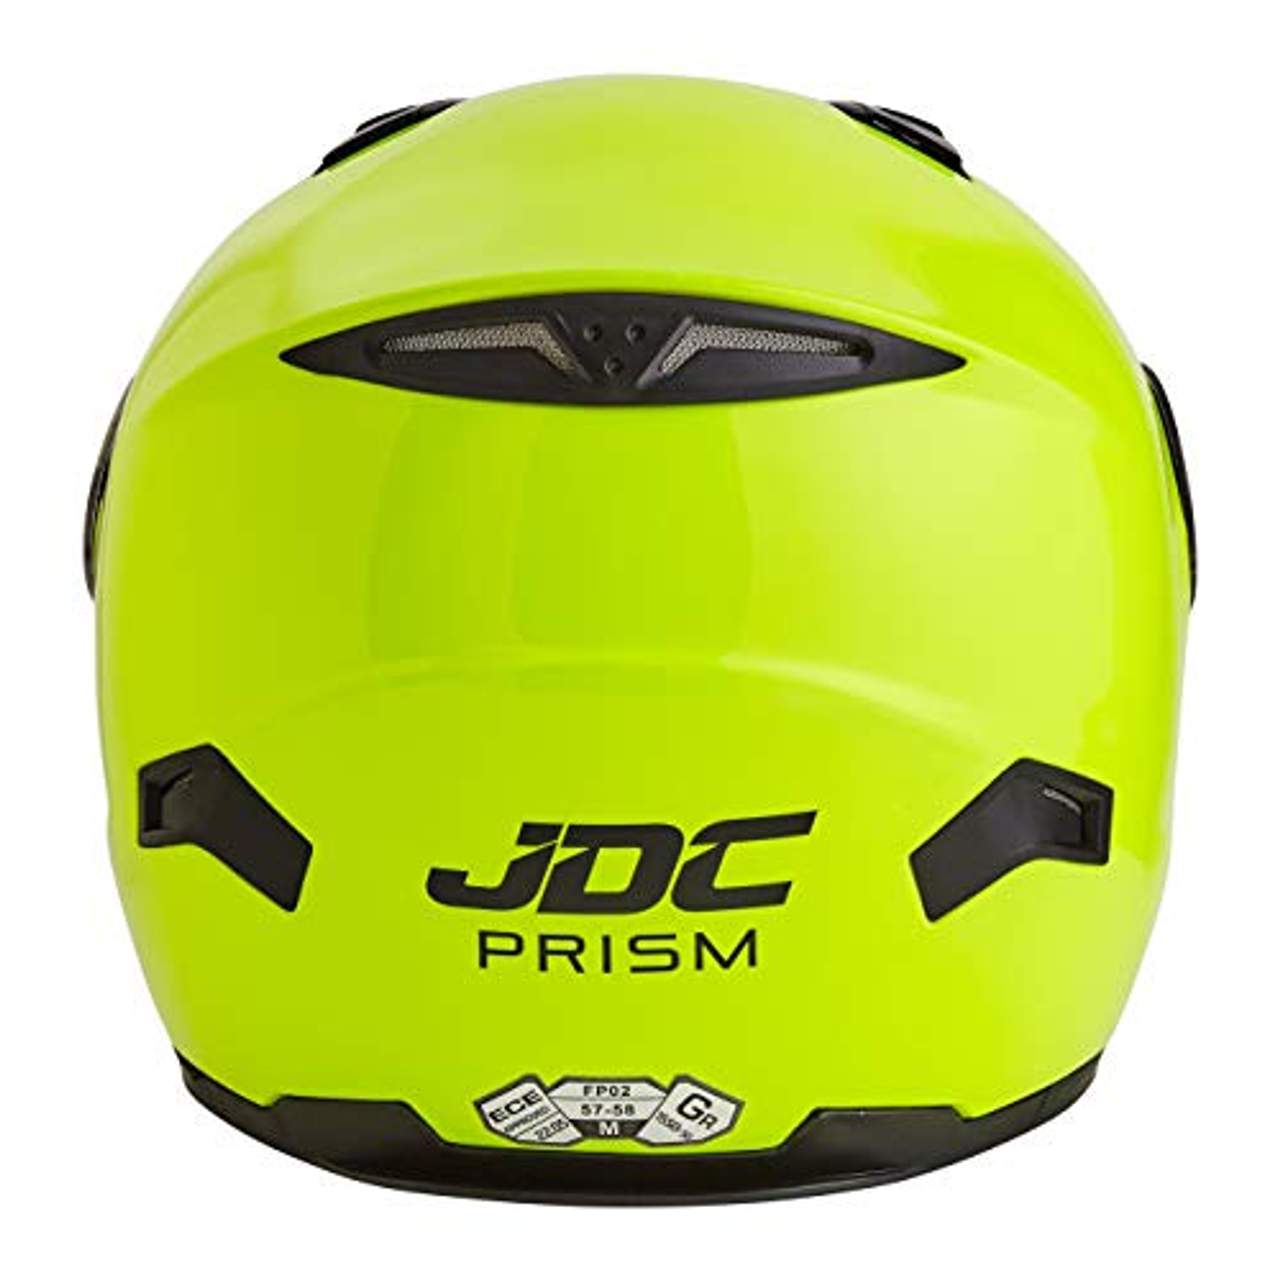 JDC volles Gesicht Motorrad Helm